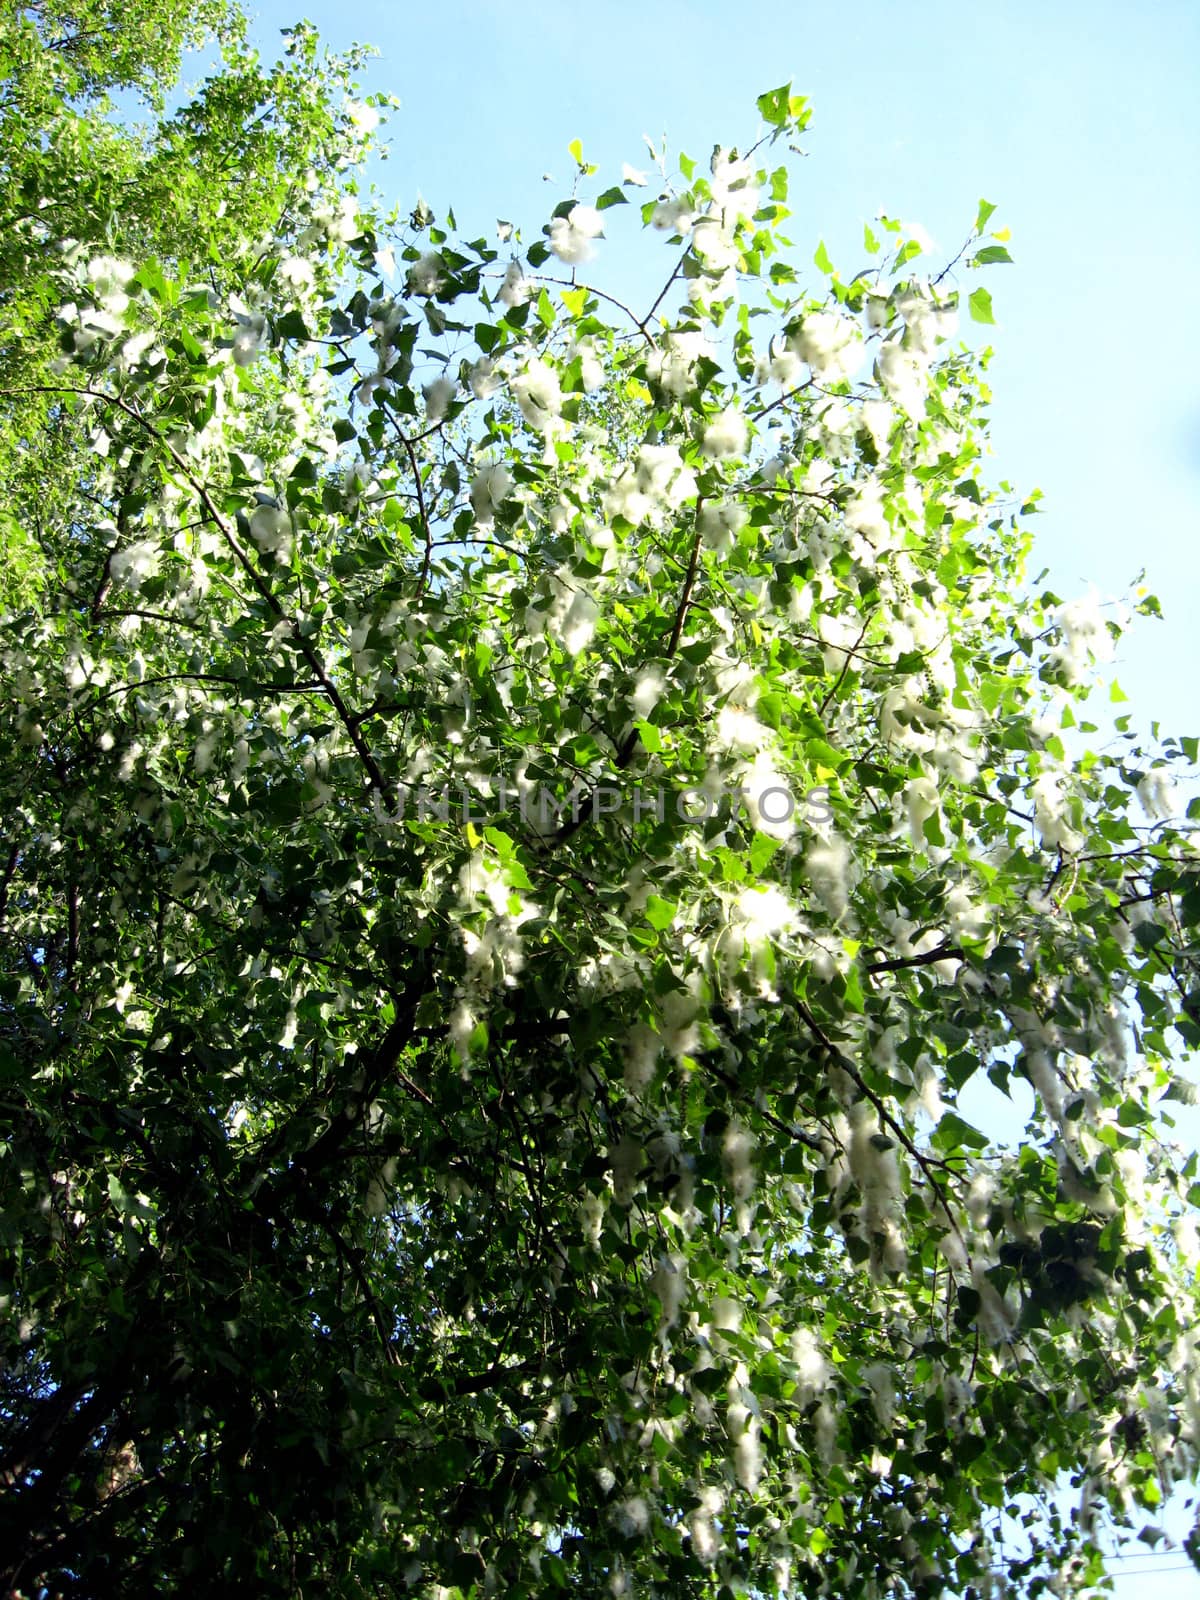 poplar down on a tree by alexmak